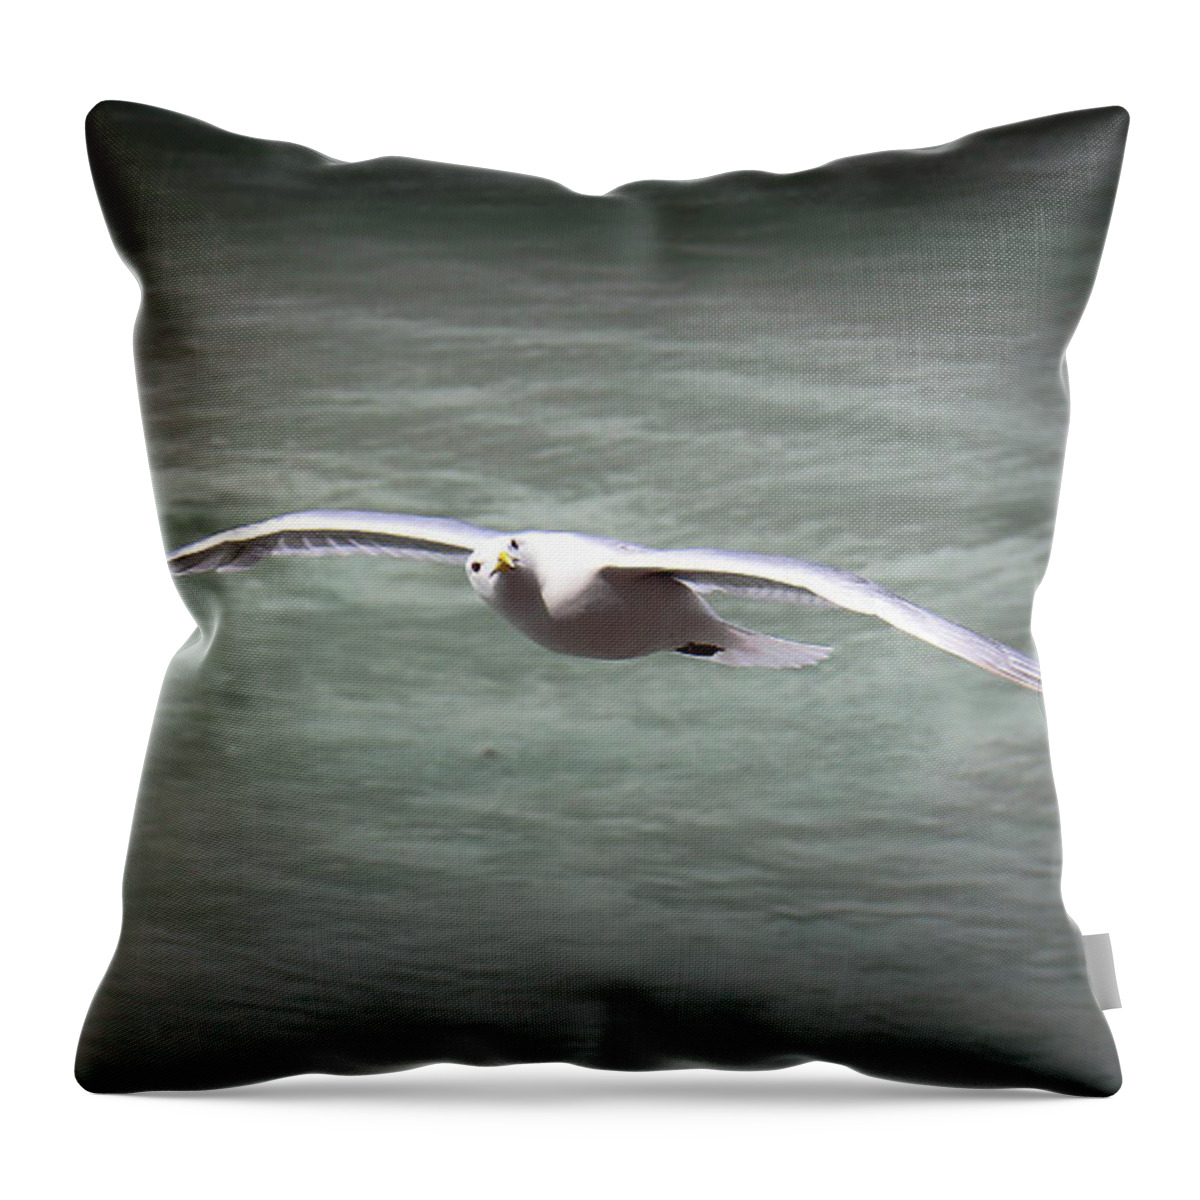 Seabird Throw Pillow featuring the photograph Seabird Over Alaska by Veronica Batterson